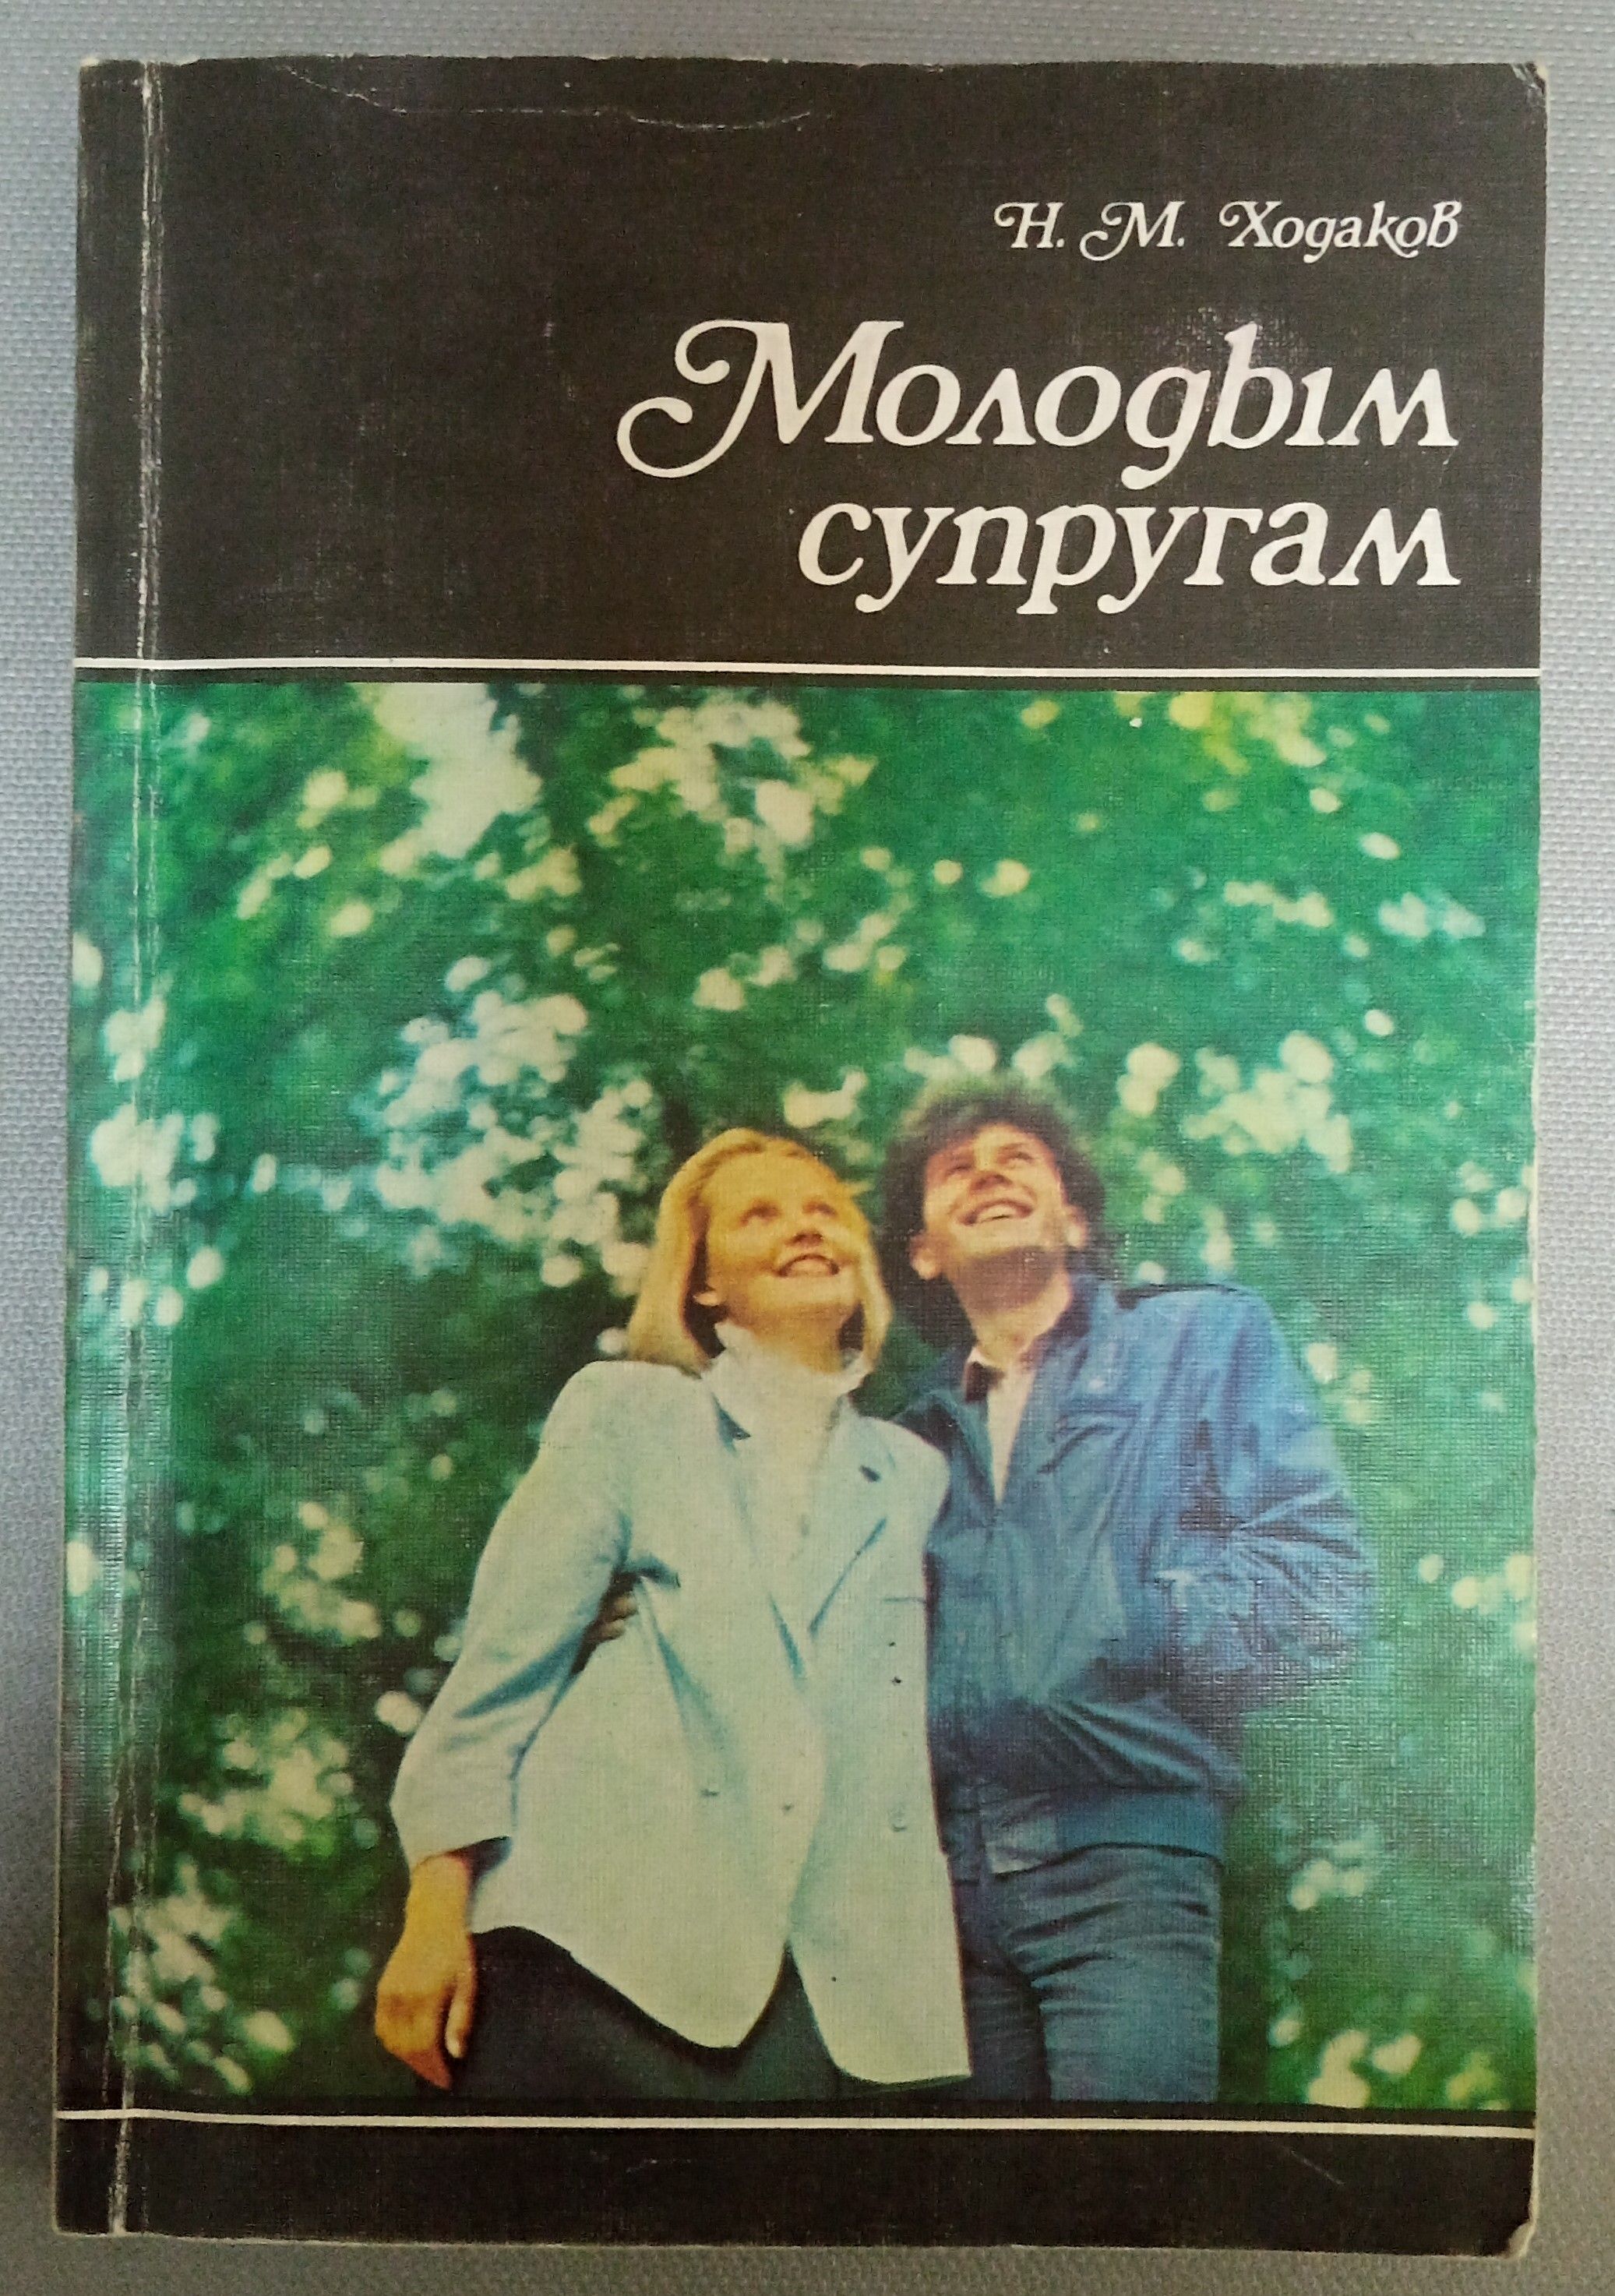 Книга молодой семьи. Ходаков молодым супругам 1988. Молодым супругам книга. Книга Ходакова молодым супругам. Книга молодым супругам 1989.